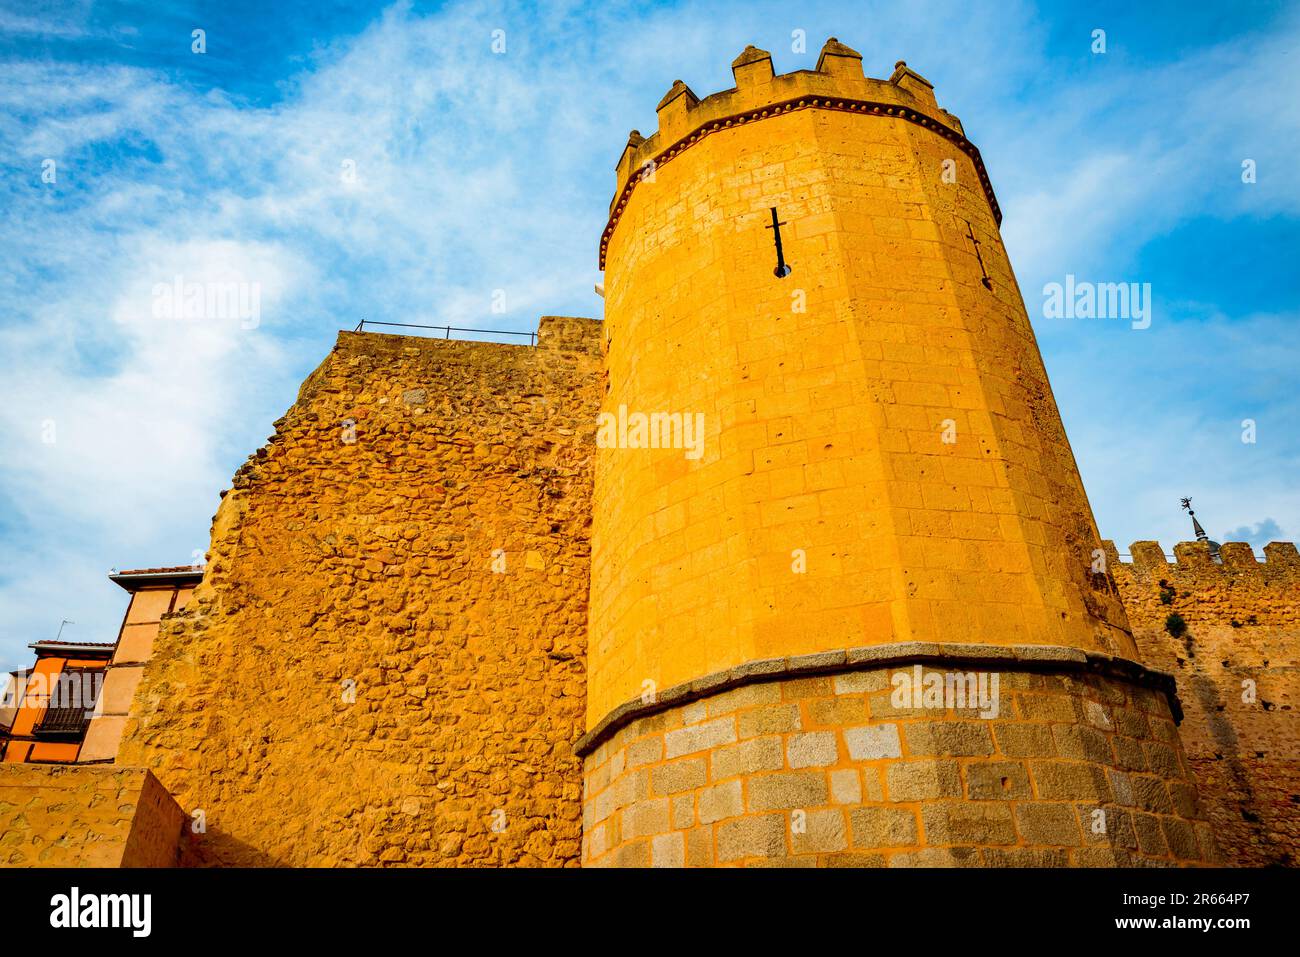 Seiteneingang von San Andres. Mauern der Stadt Segovia neben dem jüdischen Viertel. Ausblick von außen. Die Mauern von Segovia - Murallas de Segovia sind Stockfoto